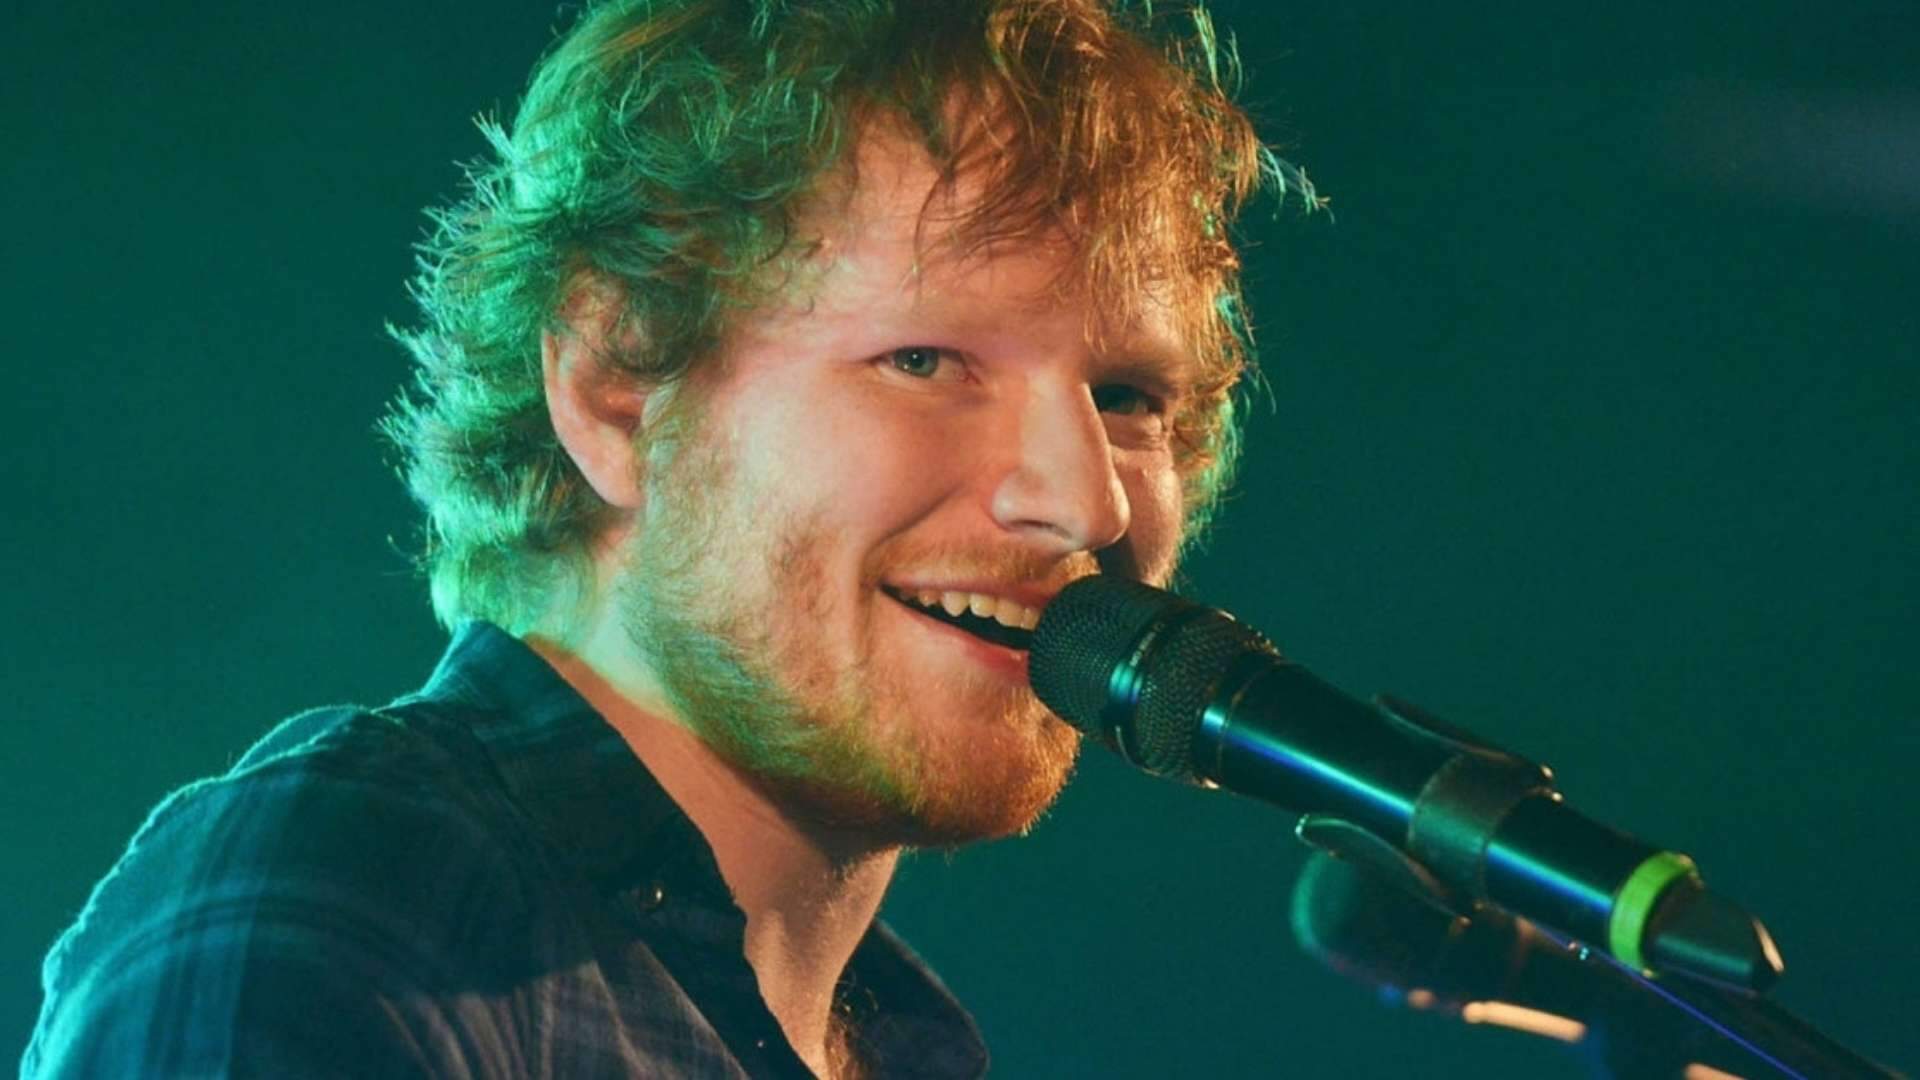 Ed Sheeran lança versão inusitada de ‘Bad Habits’ e impressiona fãs: “Edinho roqueiro?” - Metropolitana FM